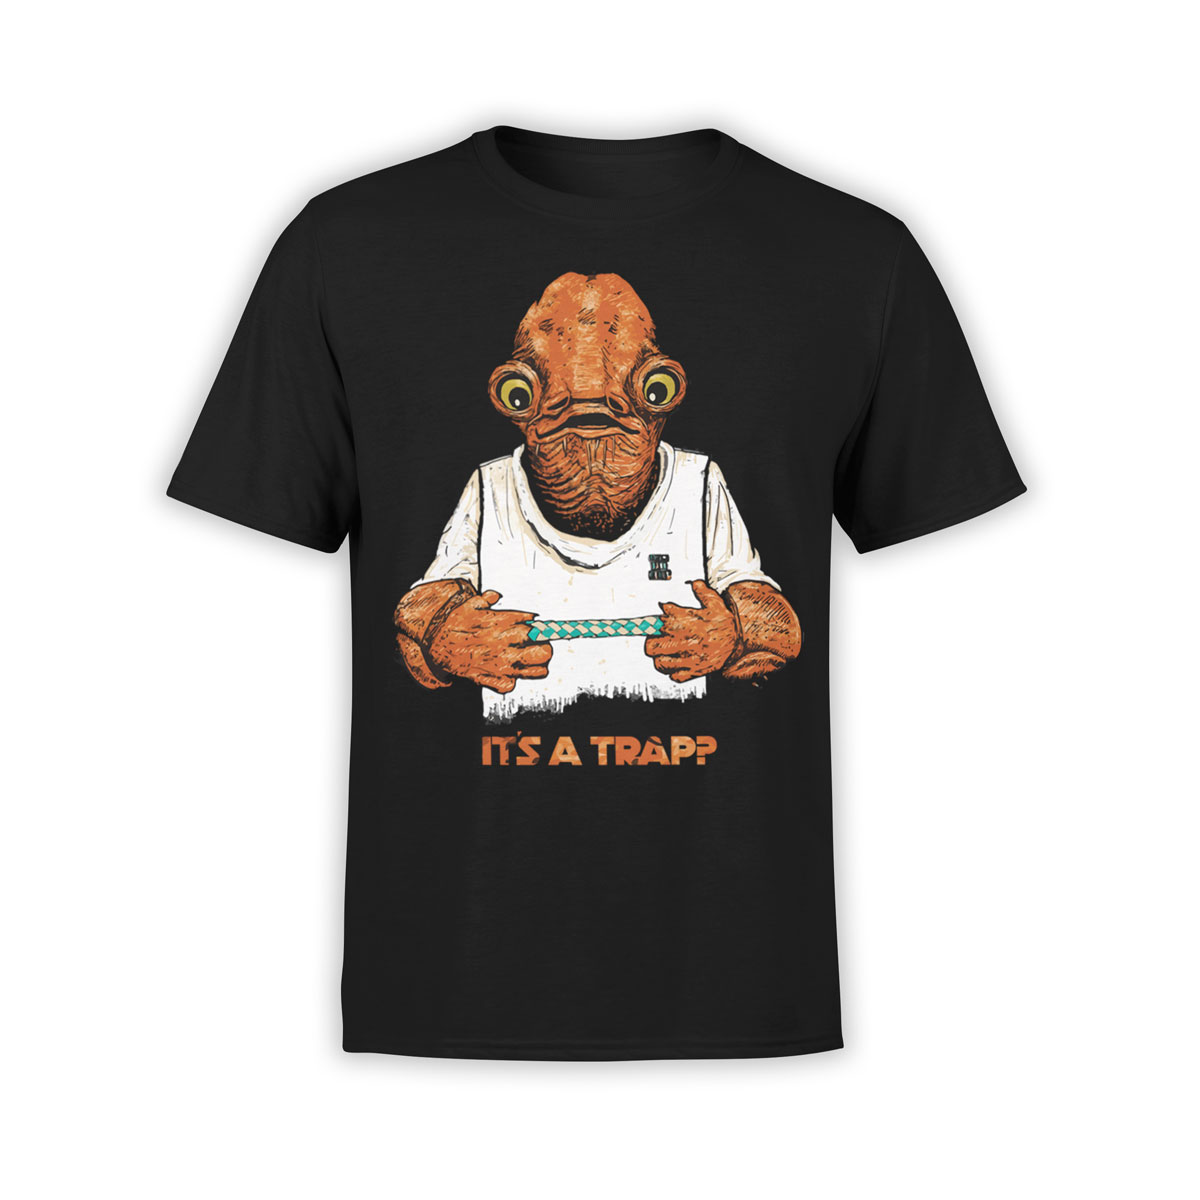 Star Wars Admiral Ackbar Art T-Shirt Men's Women's All Sizes